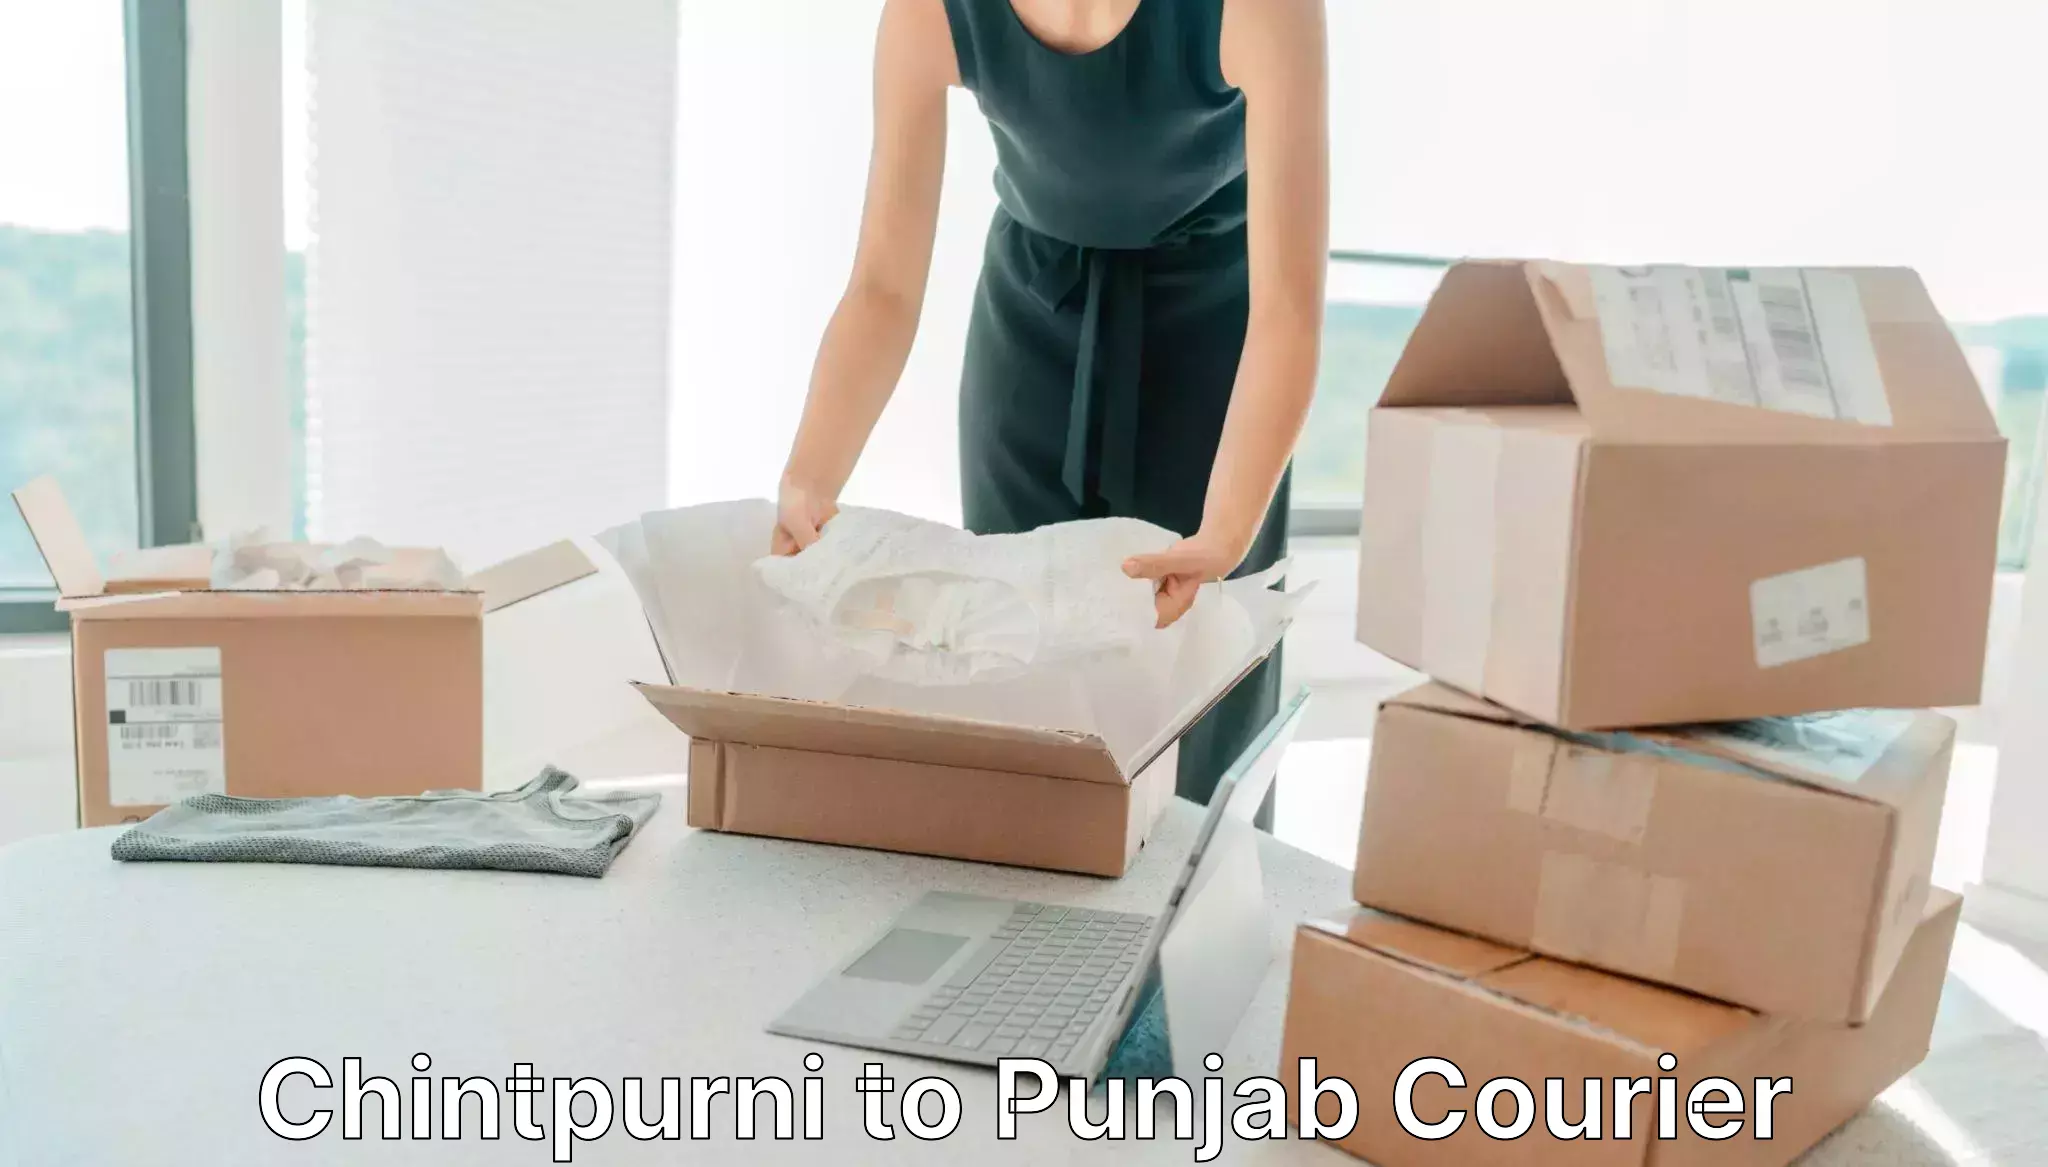 Customized shipping options Chintpurni to Punjab